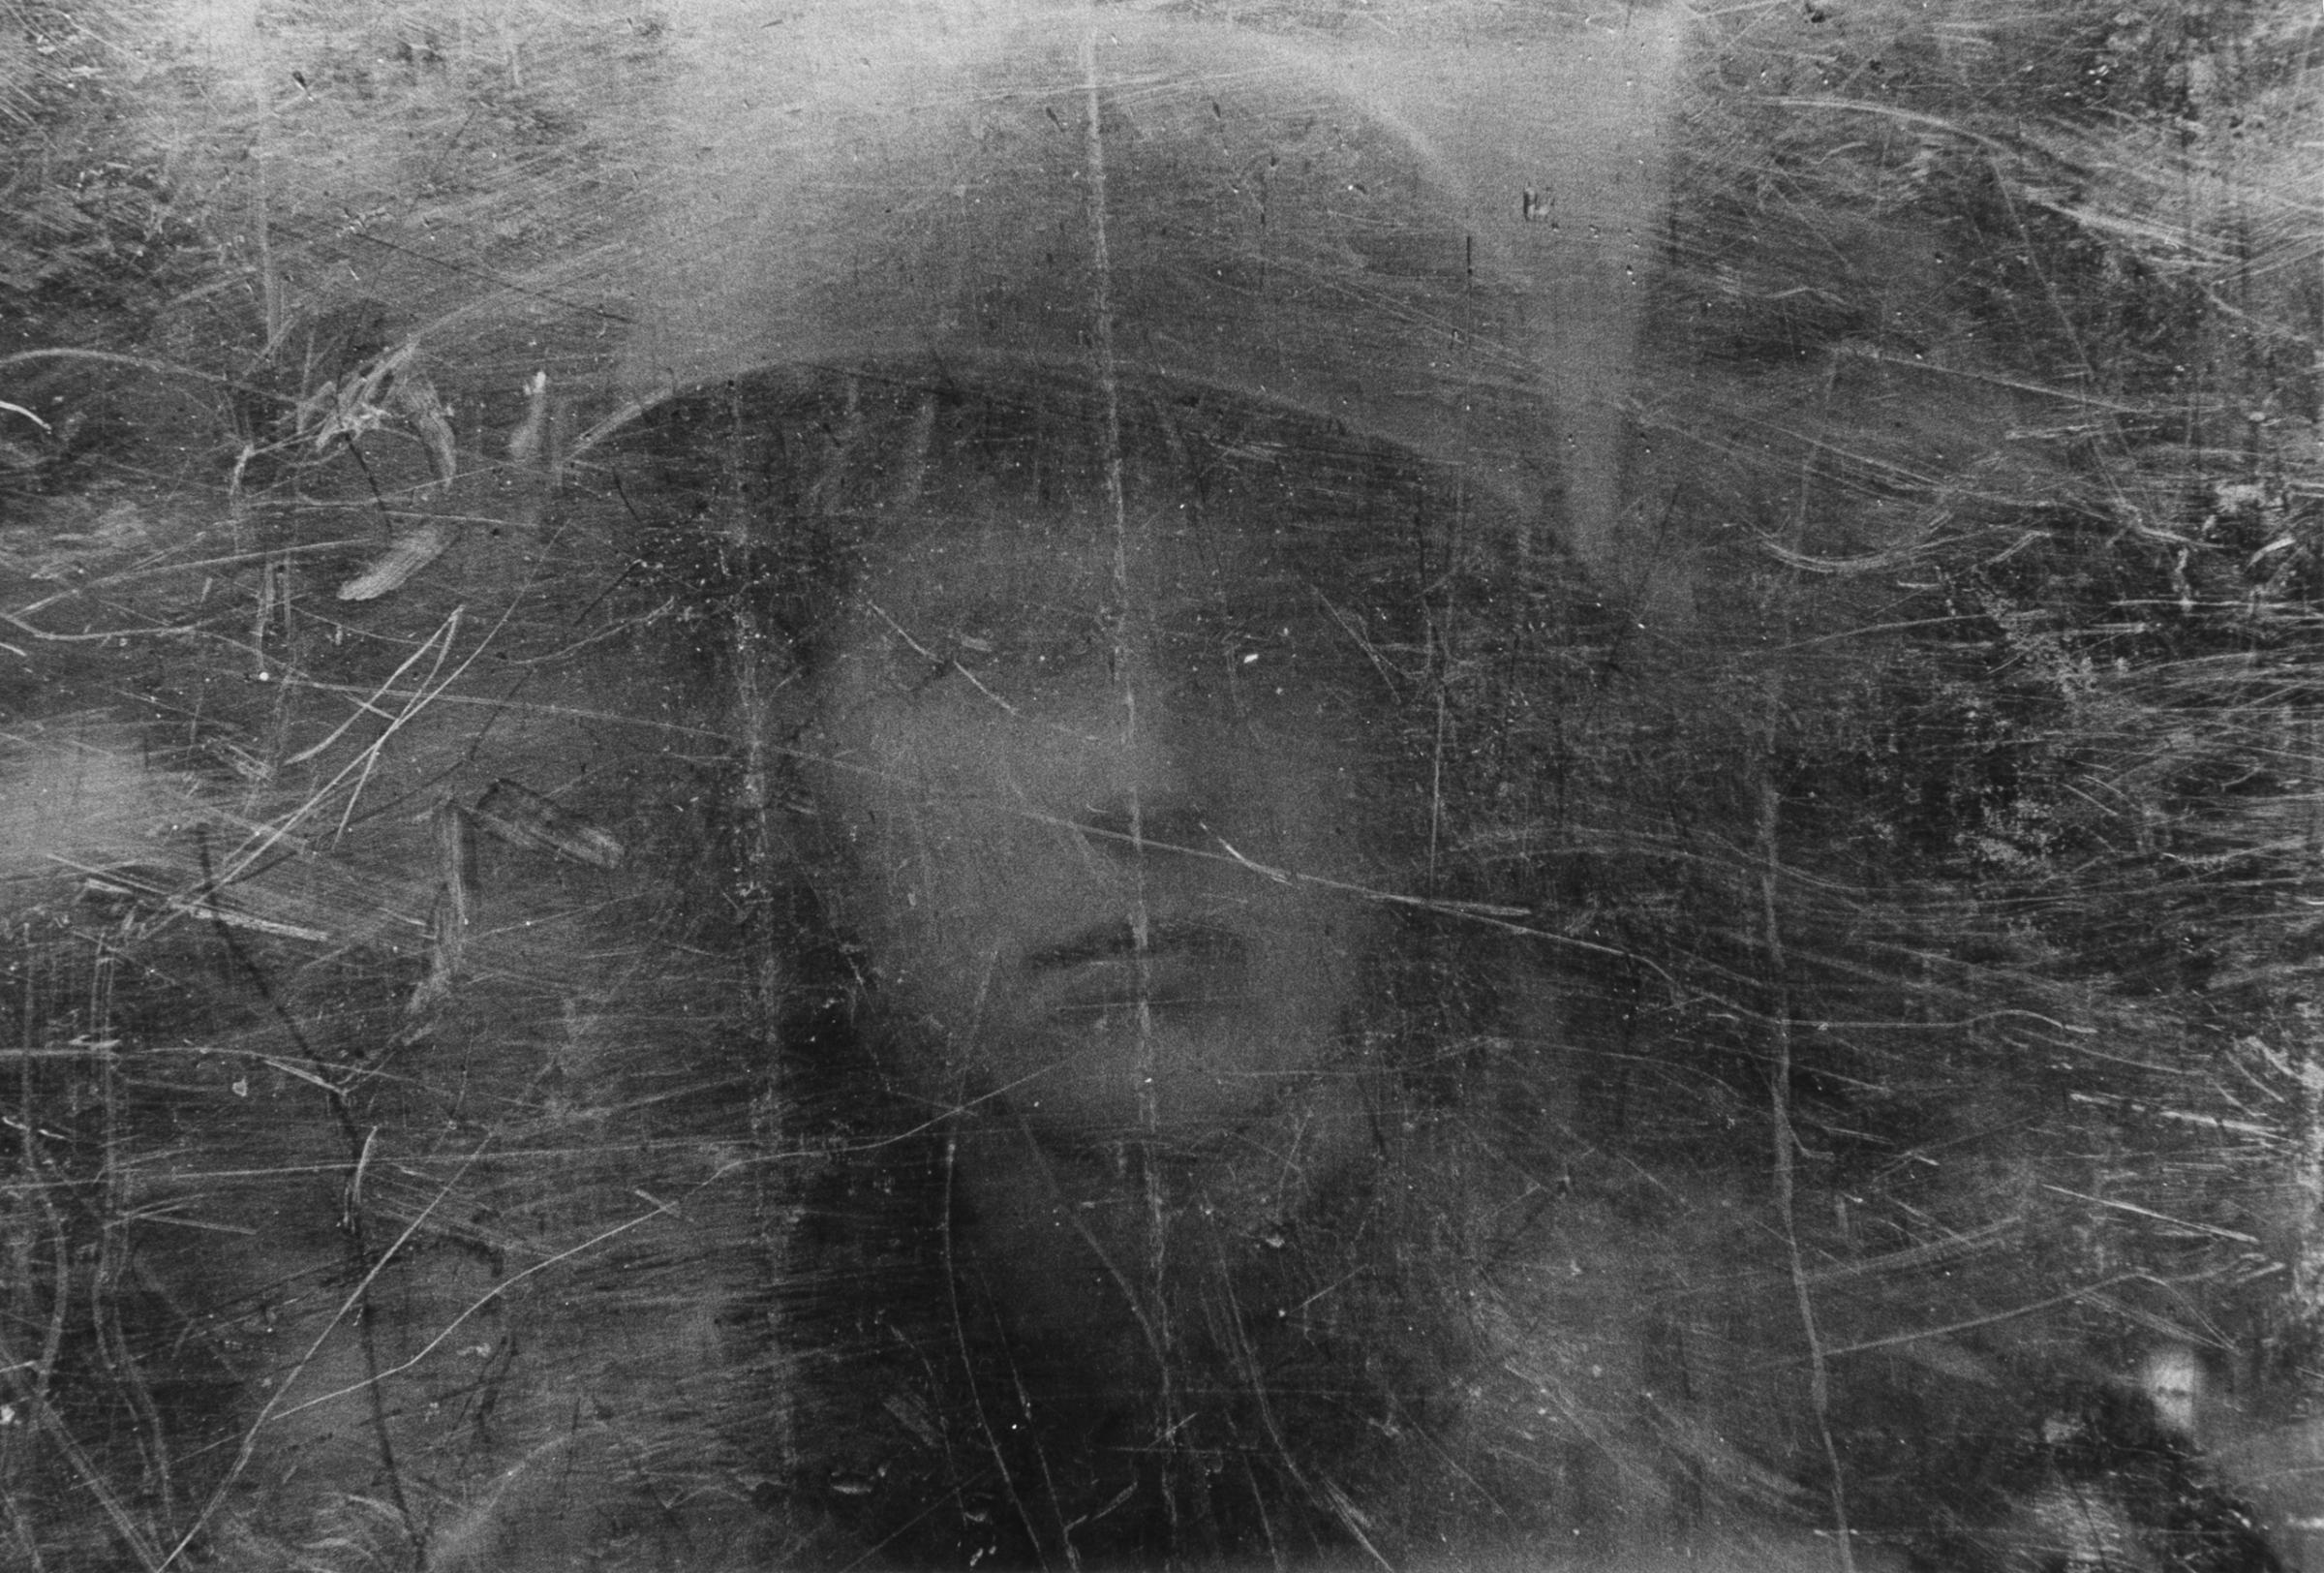 Soldier seen through shield, Northern Ireland, 1973